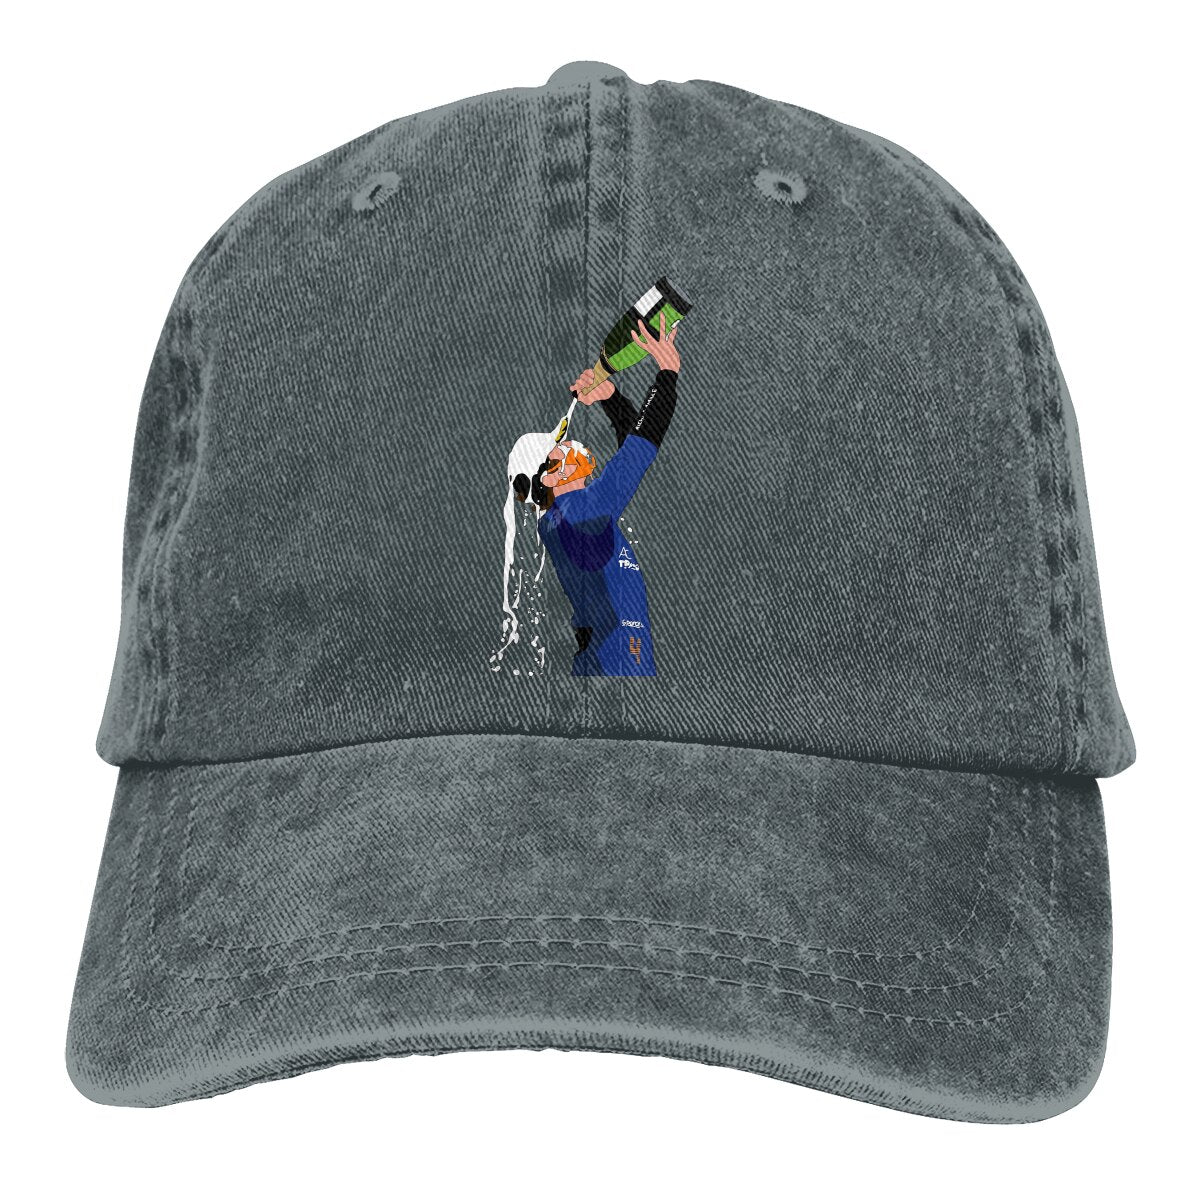 Lando Norris Mclaren F1 Baseball Cap